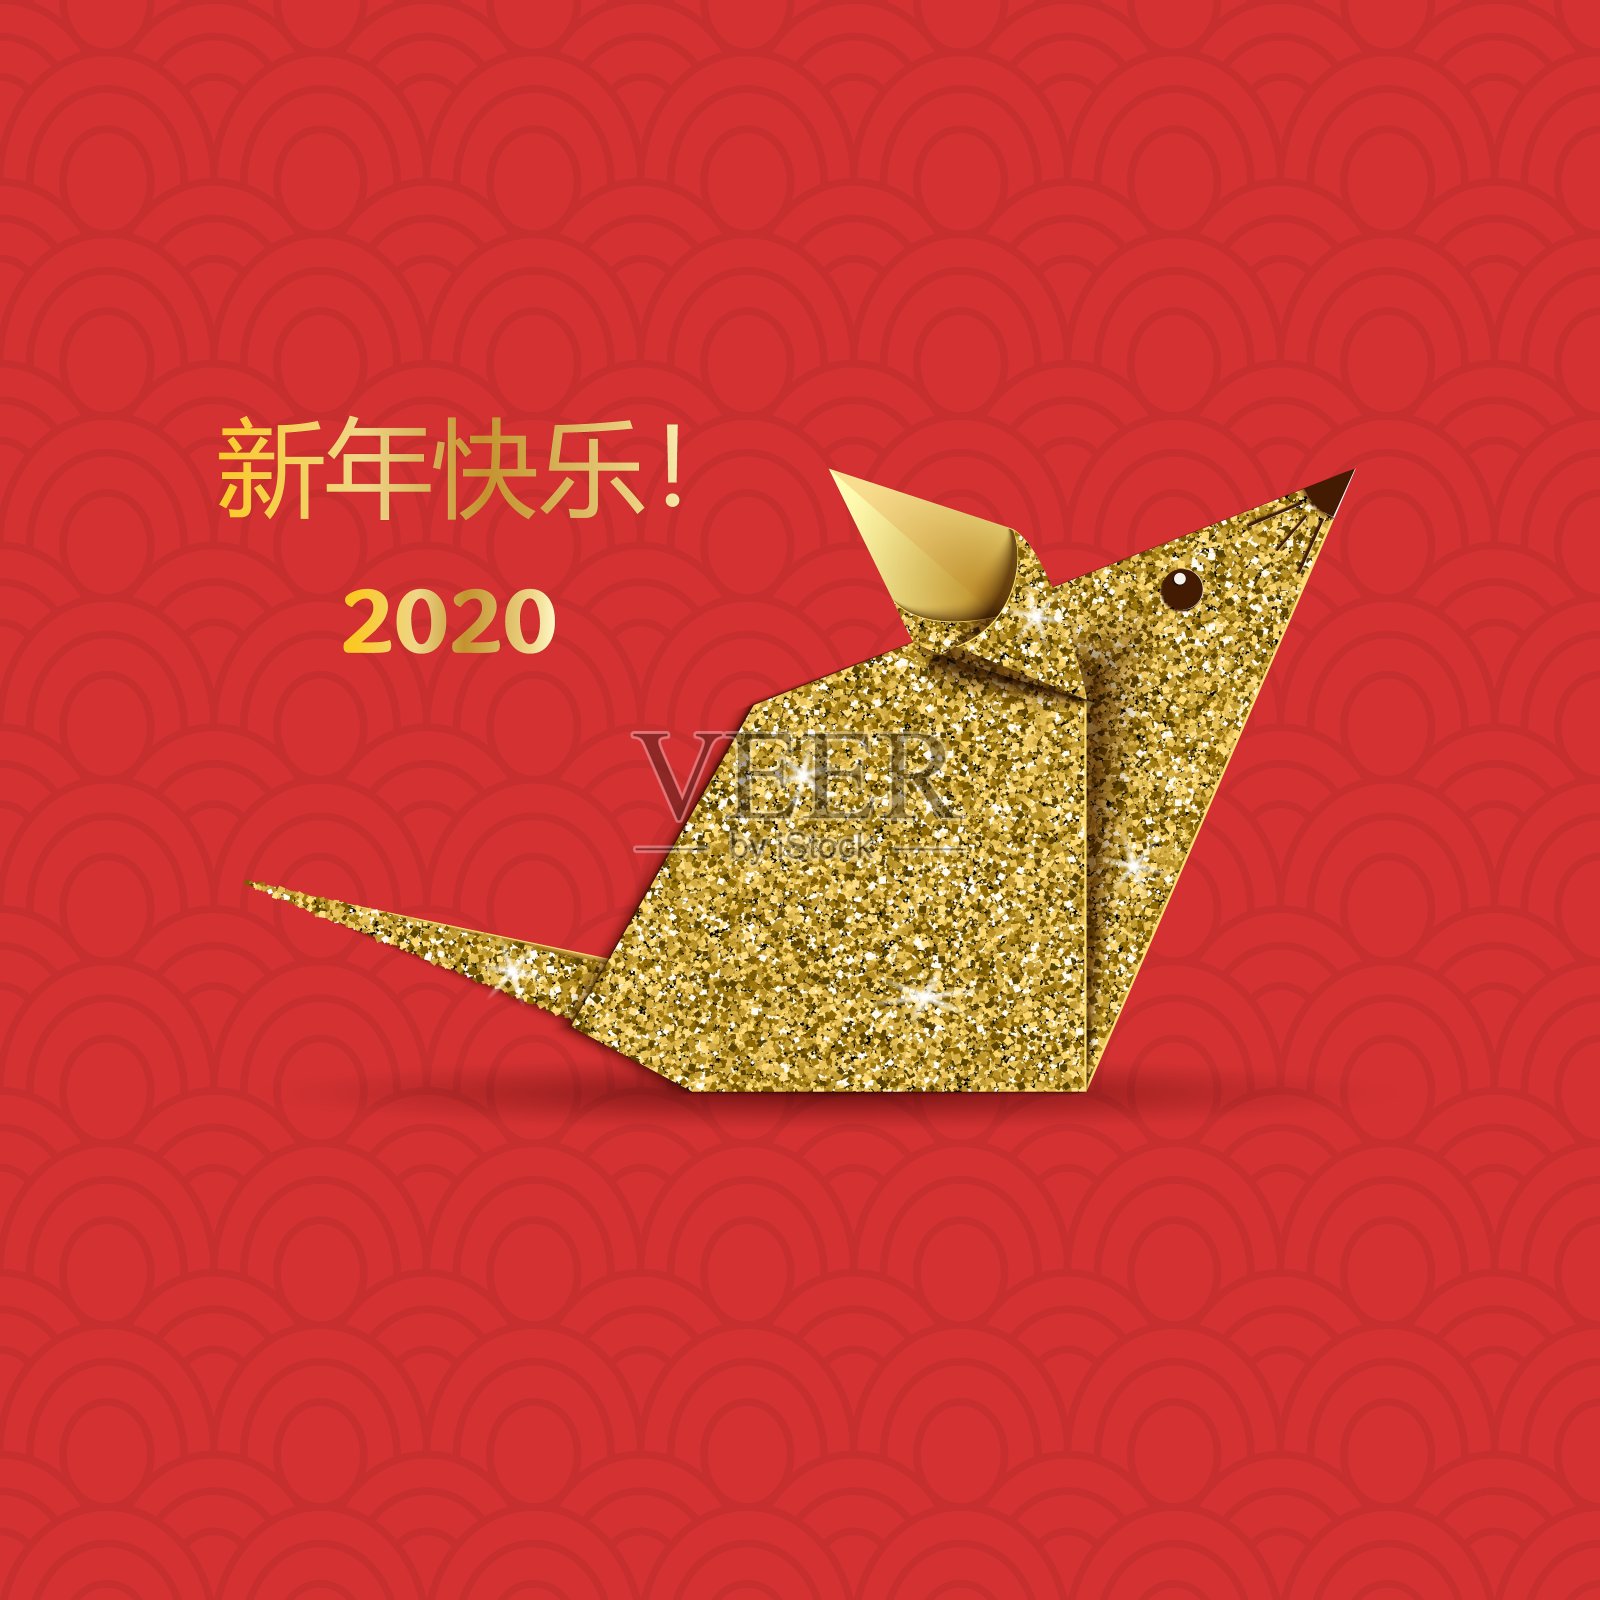 老鼠折纸剪纸概念。鼠标工艺，象征2020年生肖新年。红色背景上的啮齿动物金色纸的应用。矢量图卡。插画图片素材